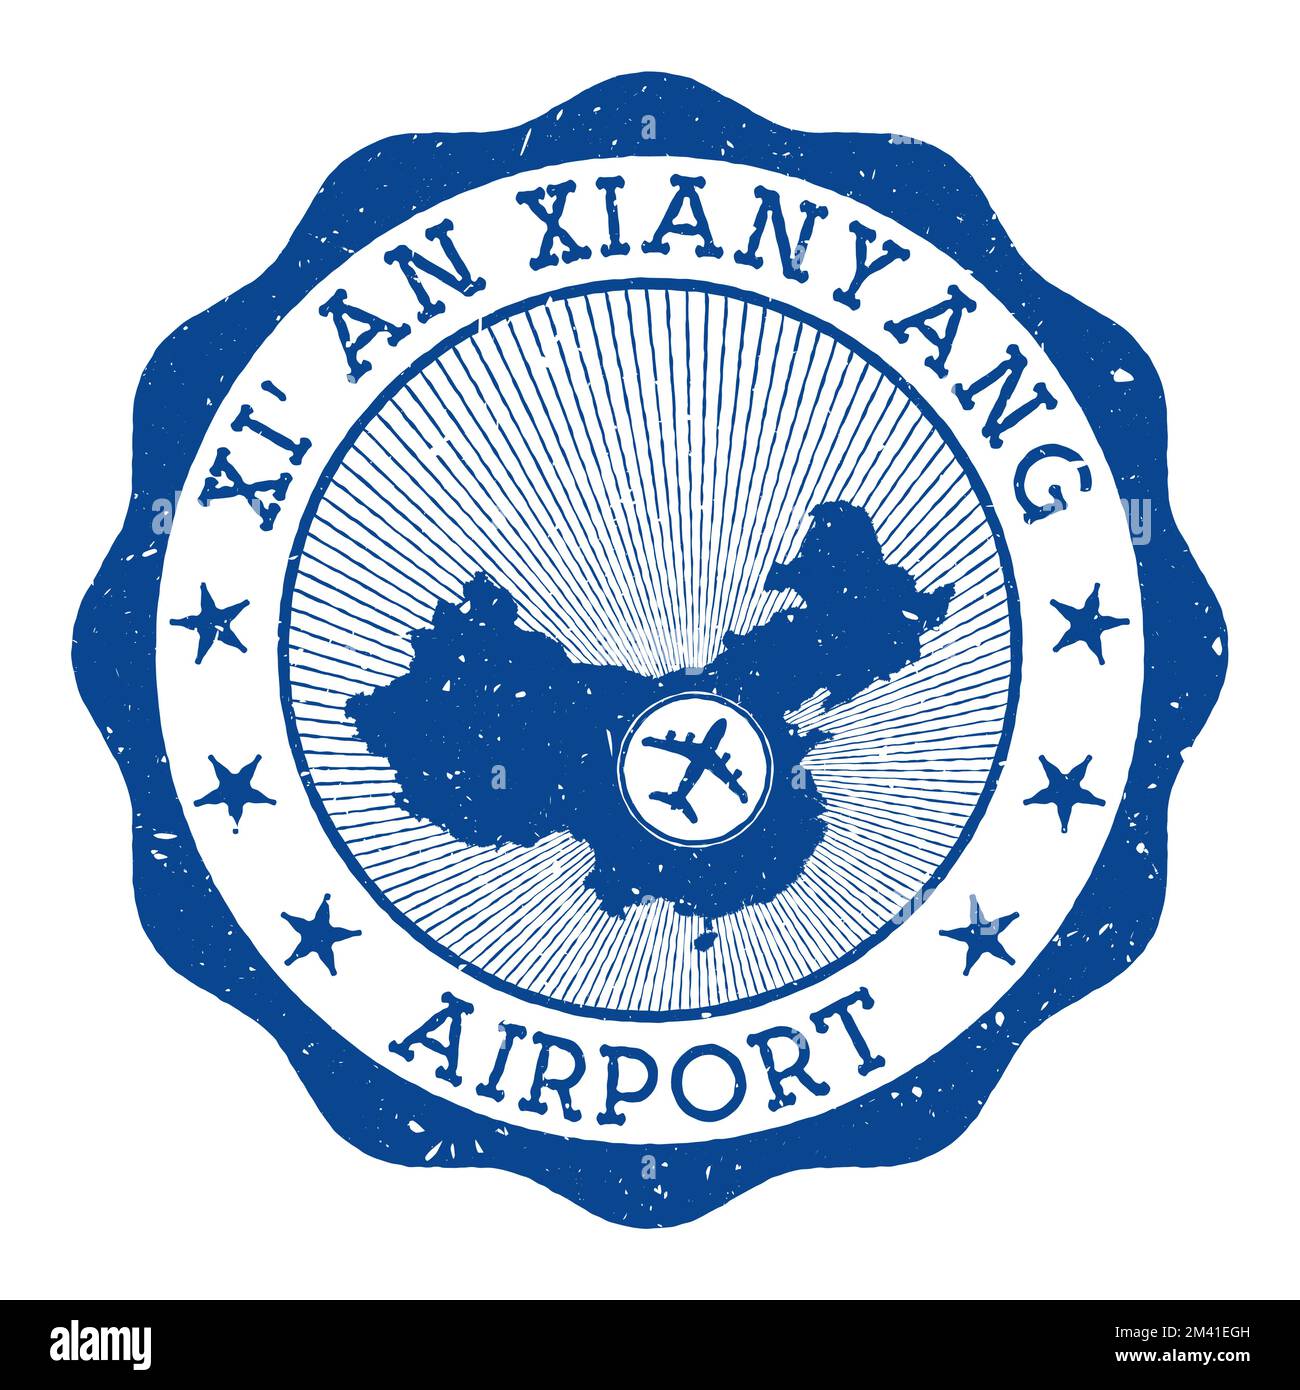 Timbre de l'aéroport de Xi'an Xianyang. Logo rond de l'aéroport de Xianyang avec emplacement sur la carte de Chine marquée par un avion. Illustration vectorielle. Illustration de Vecteur